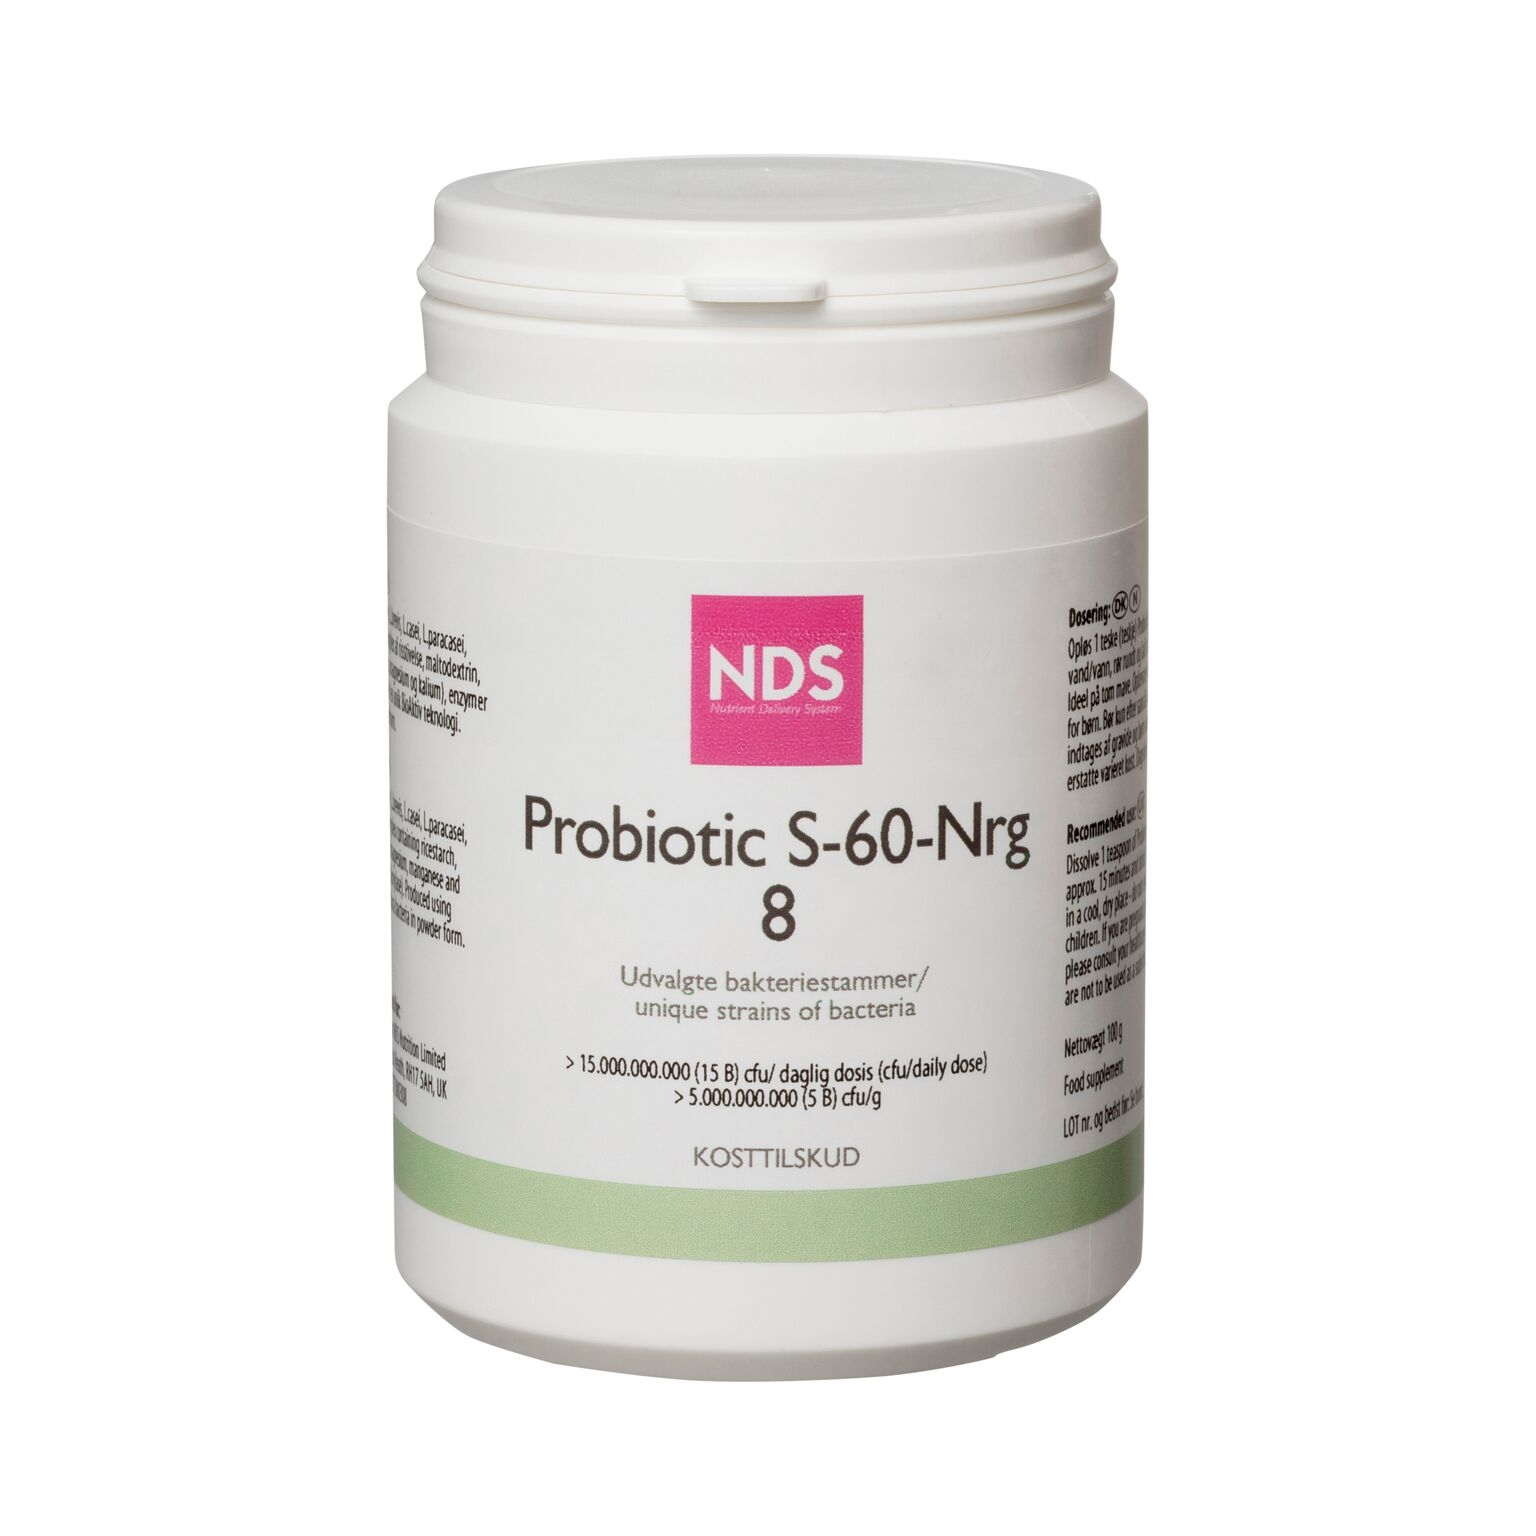 Billede af NDS Probiotic S-60-NRG 8 (100 g) hos Well.dk